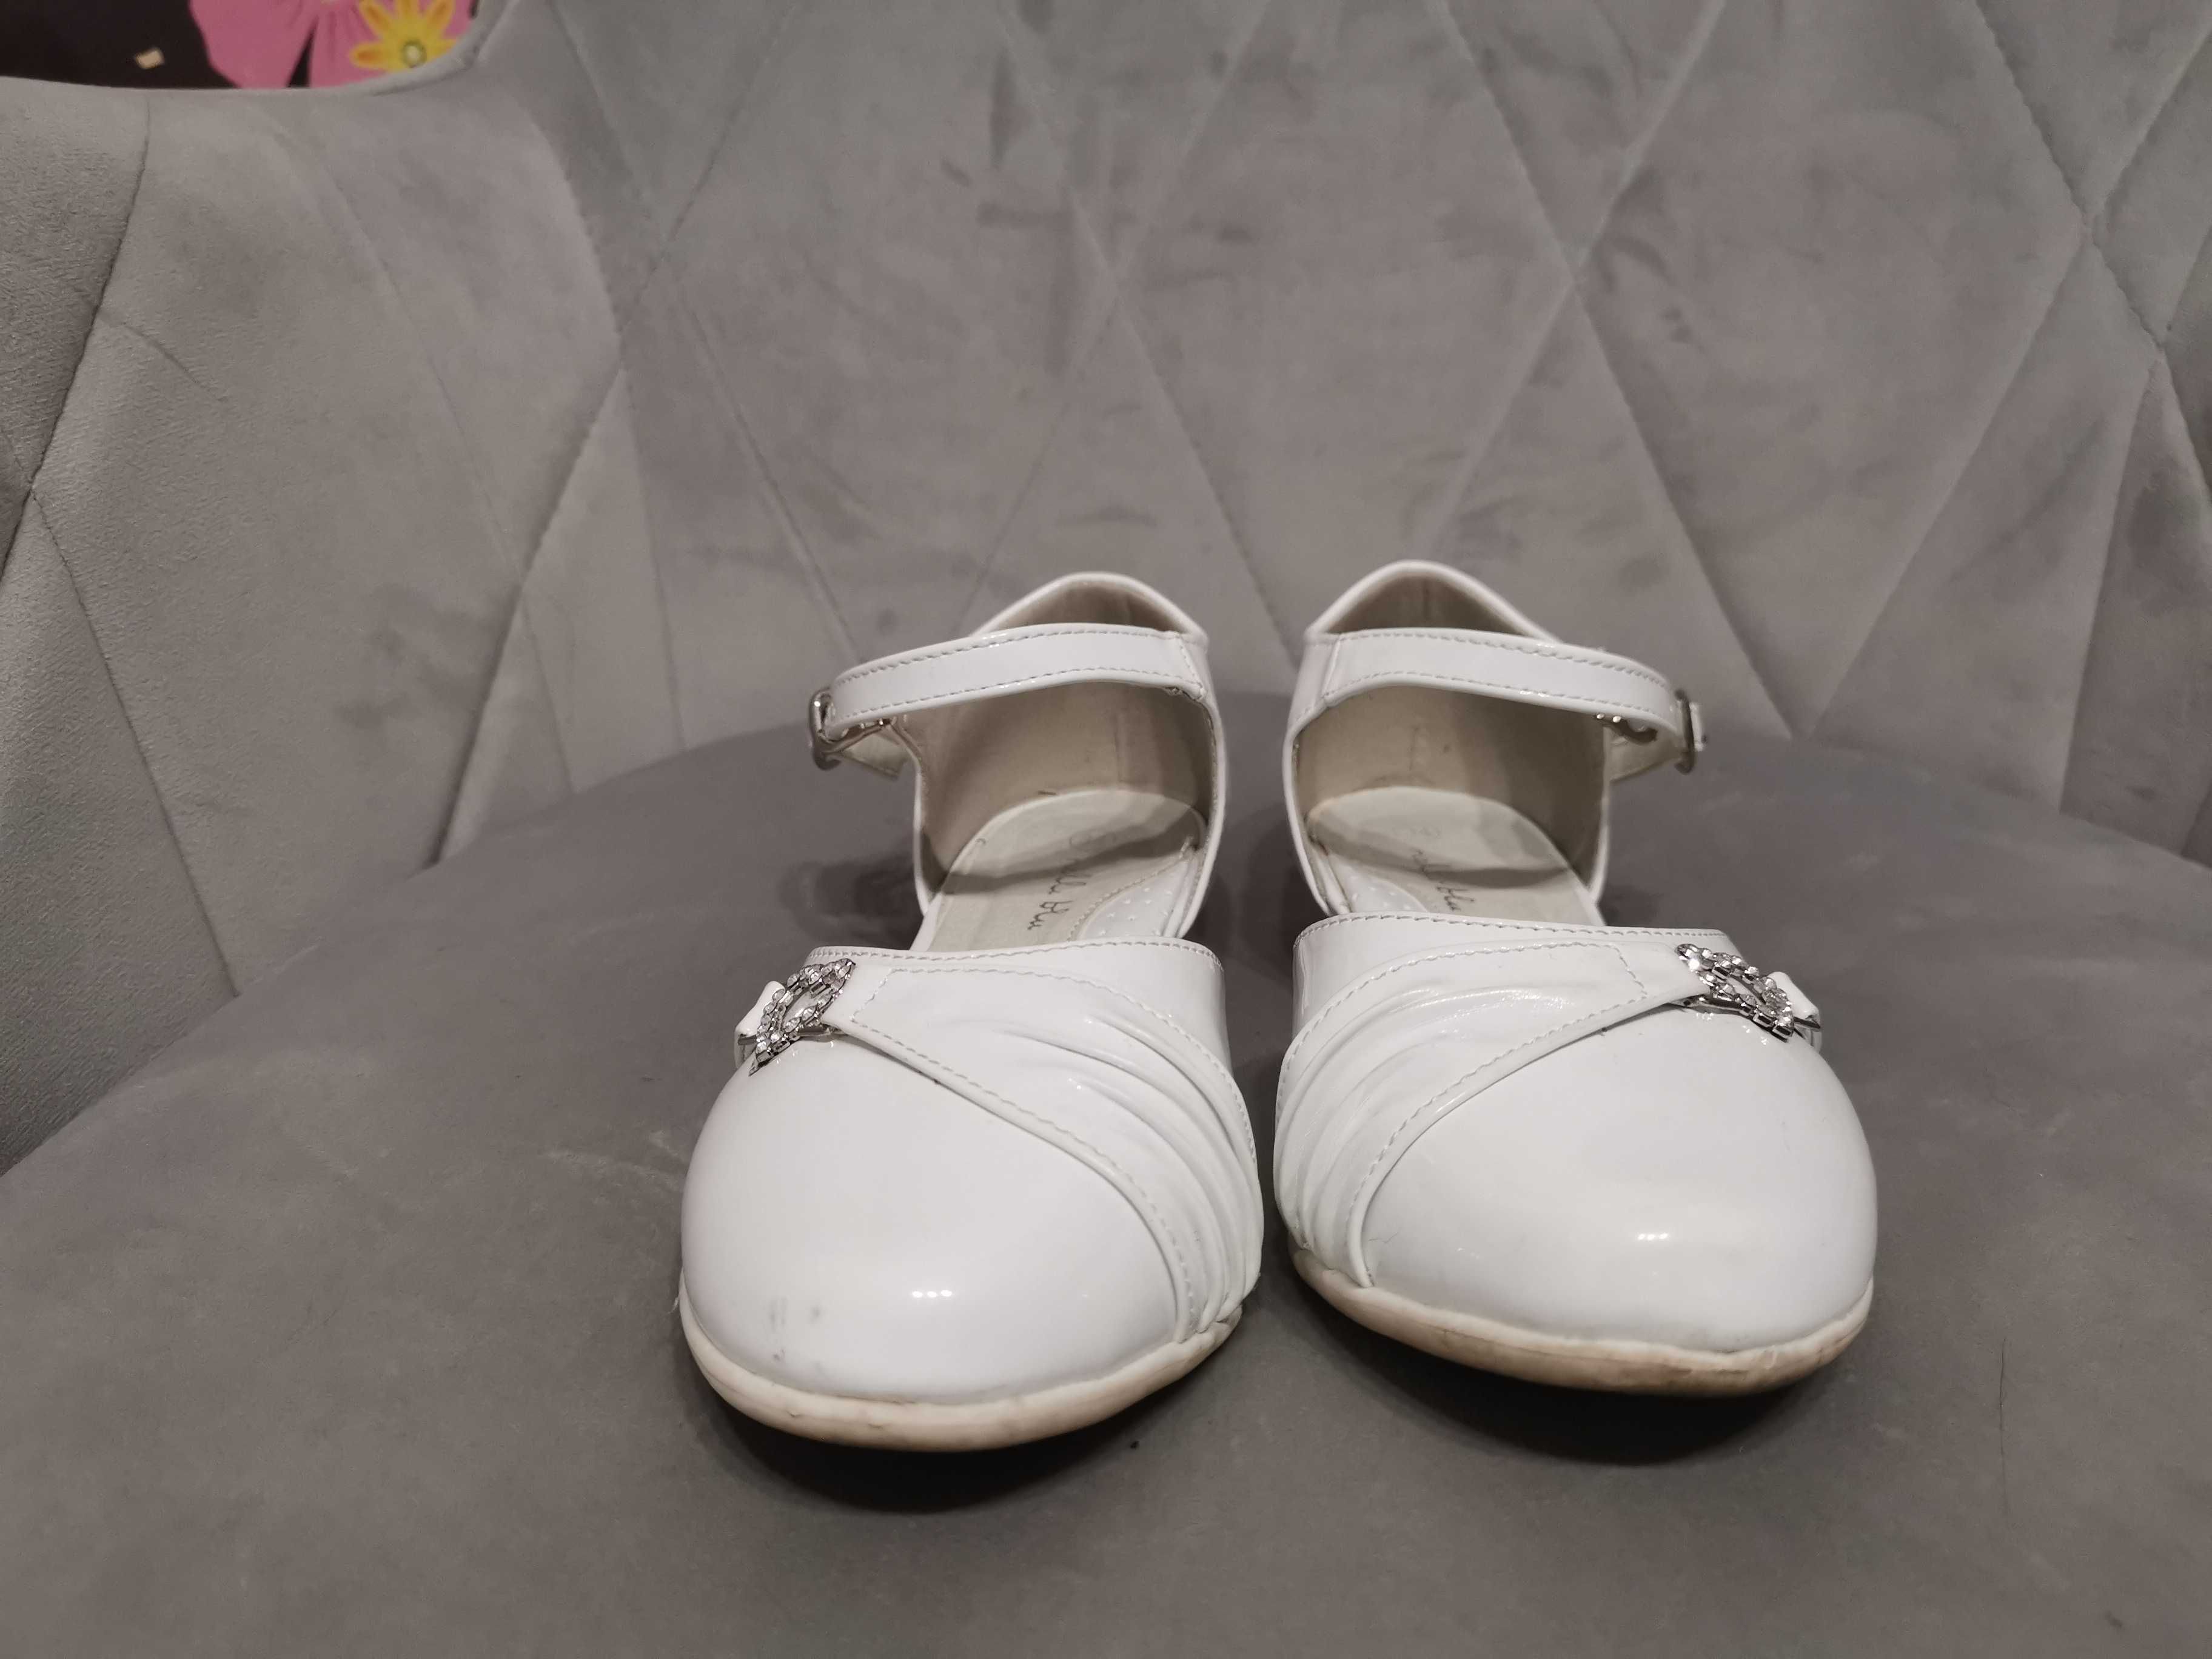 Białe buty komunijne, galowe rozmiar 34